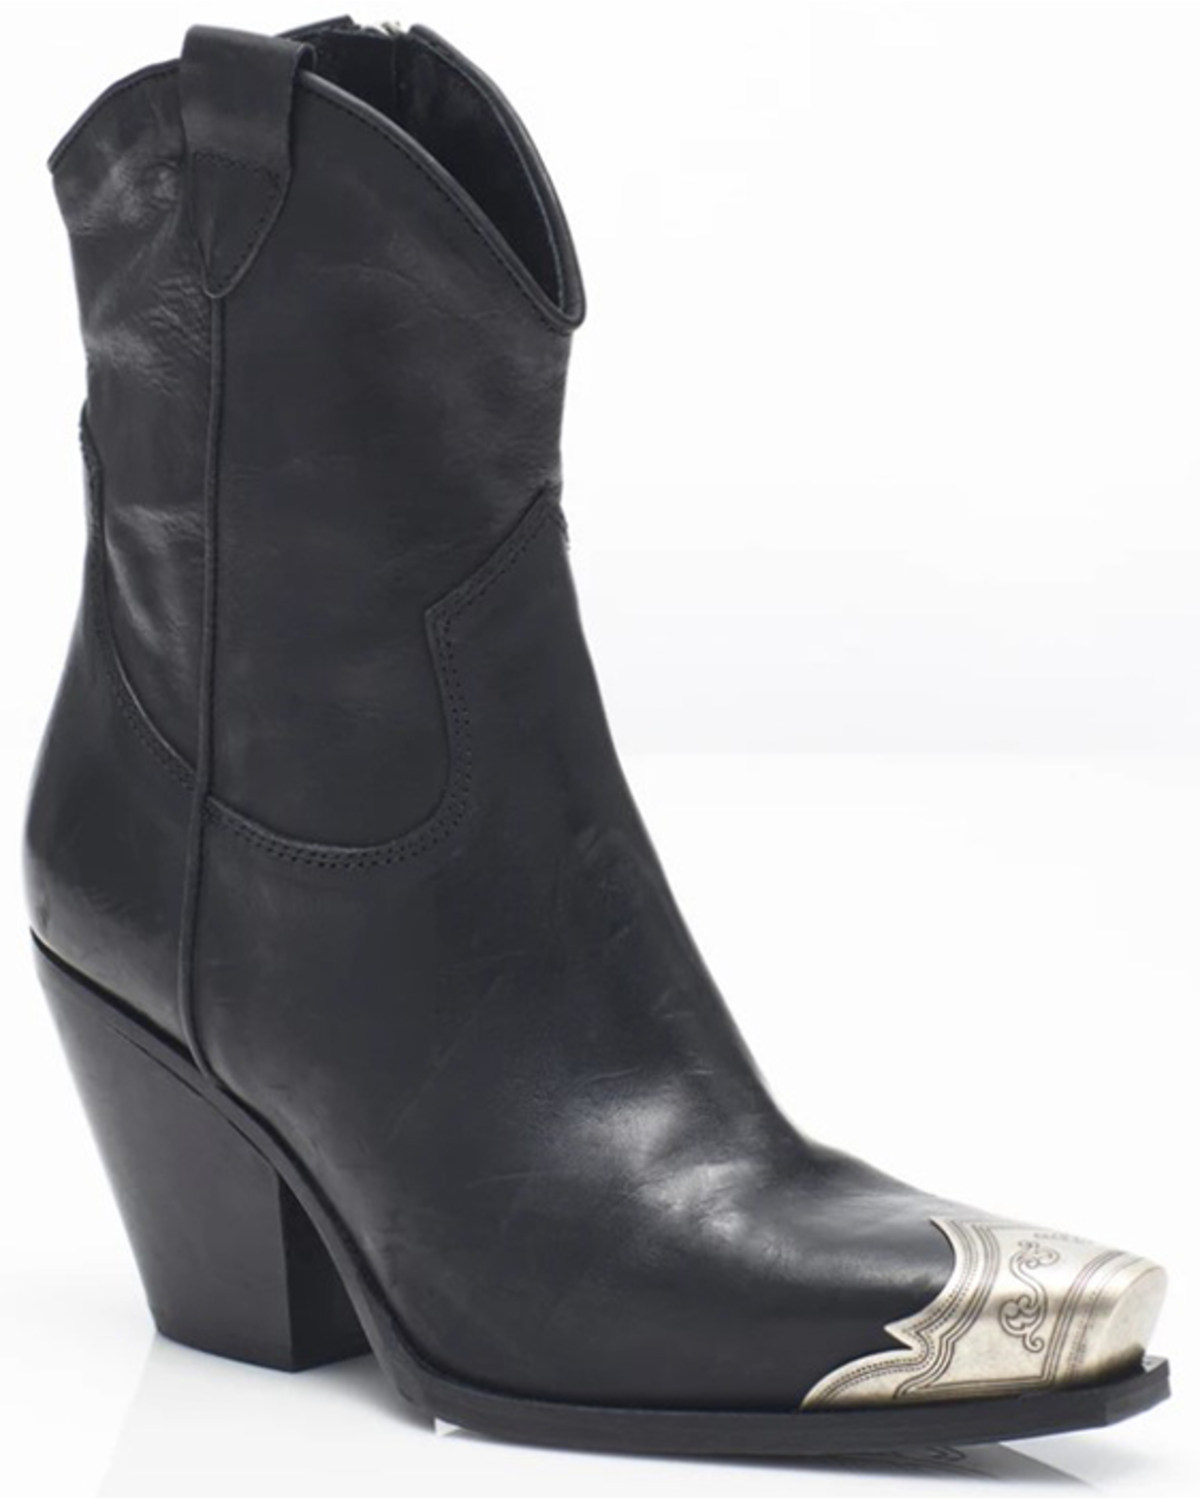 Free People Women's Brayden Leather Western Boot